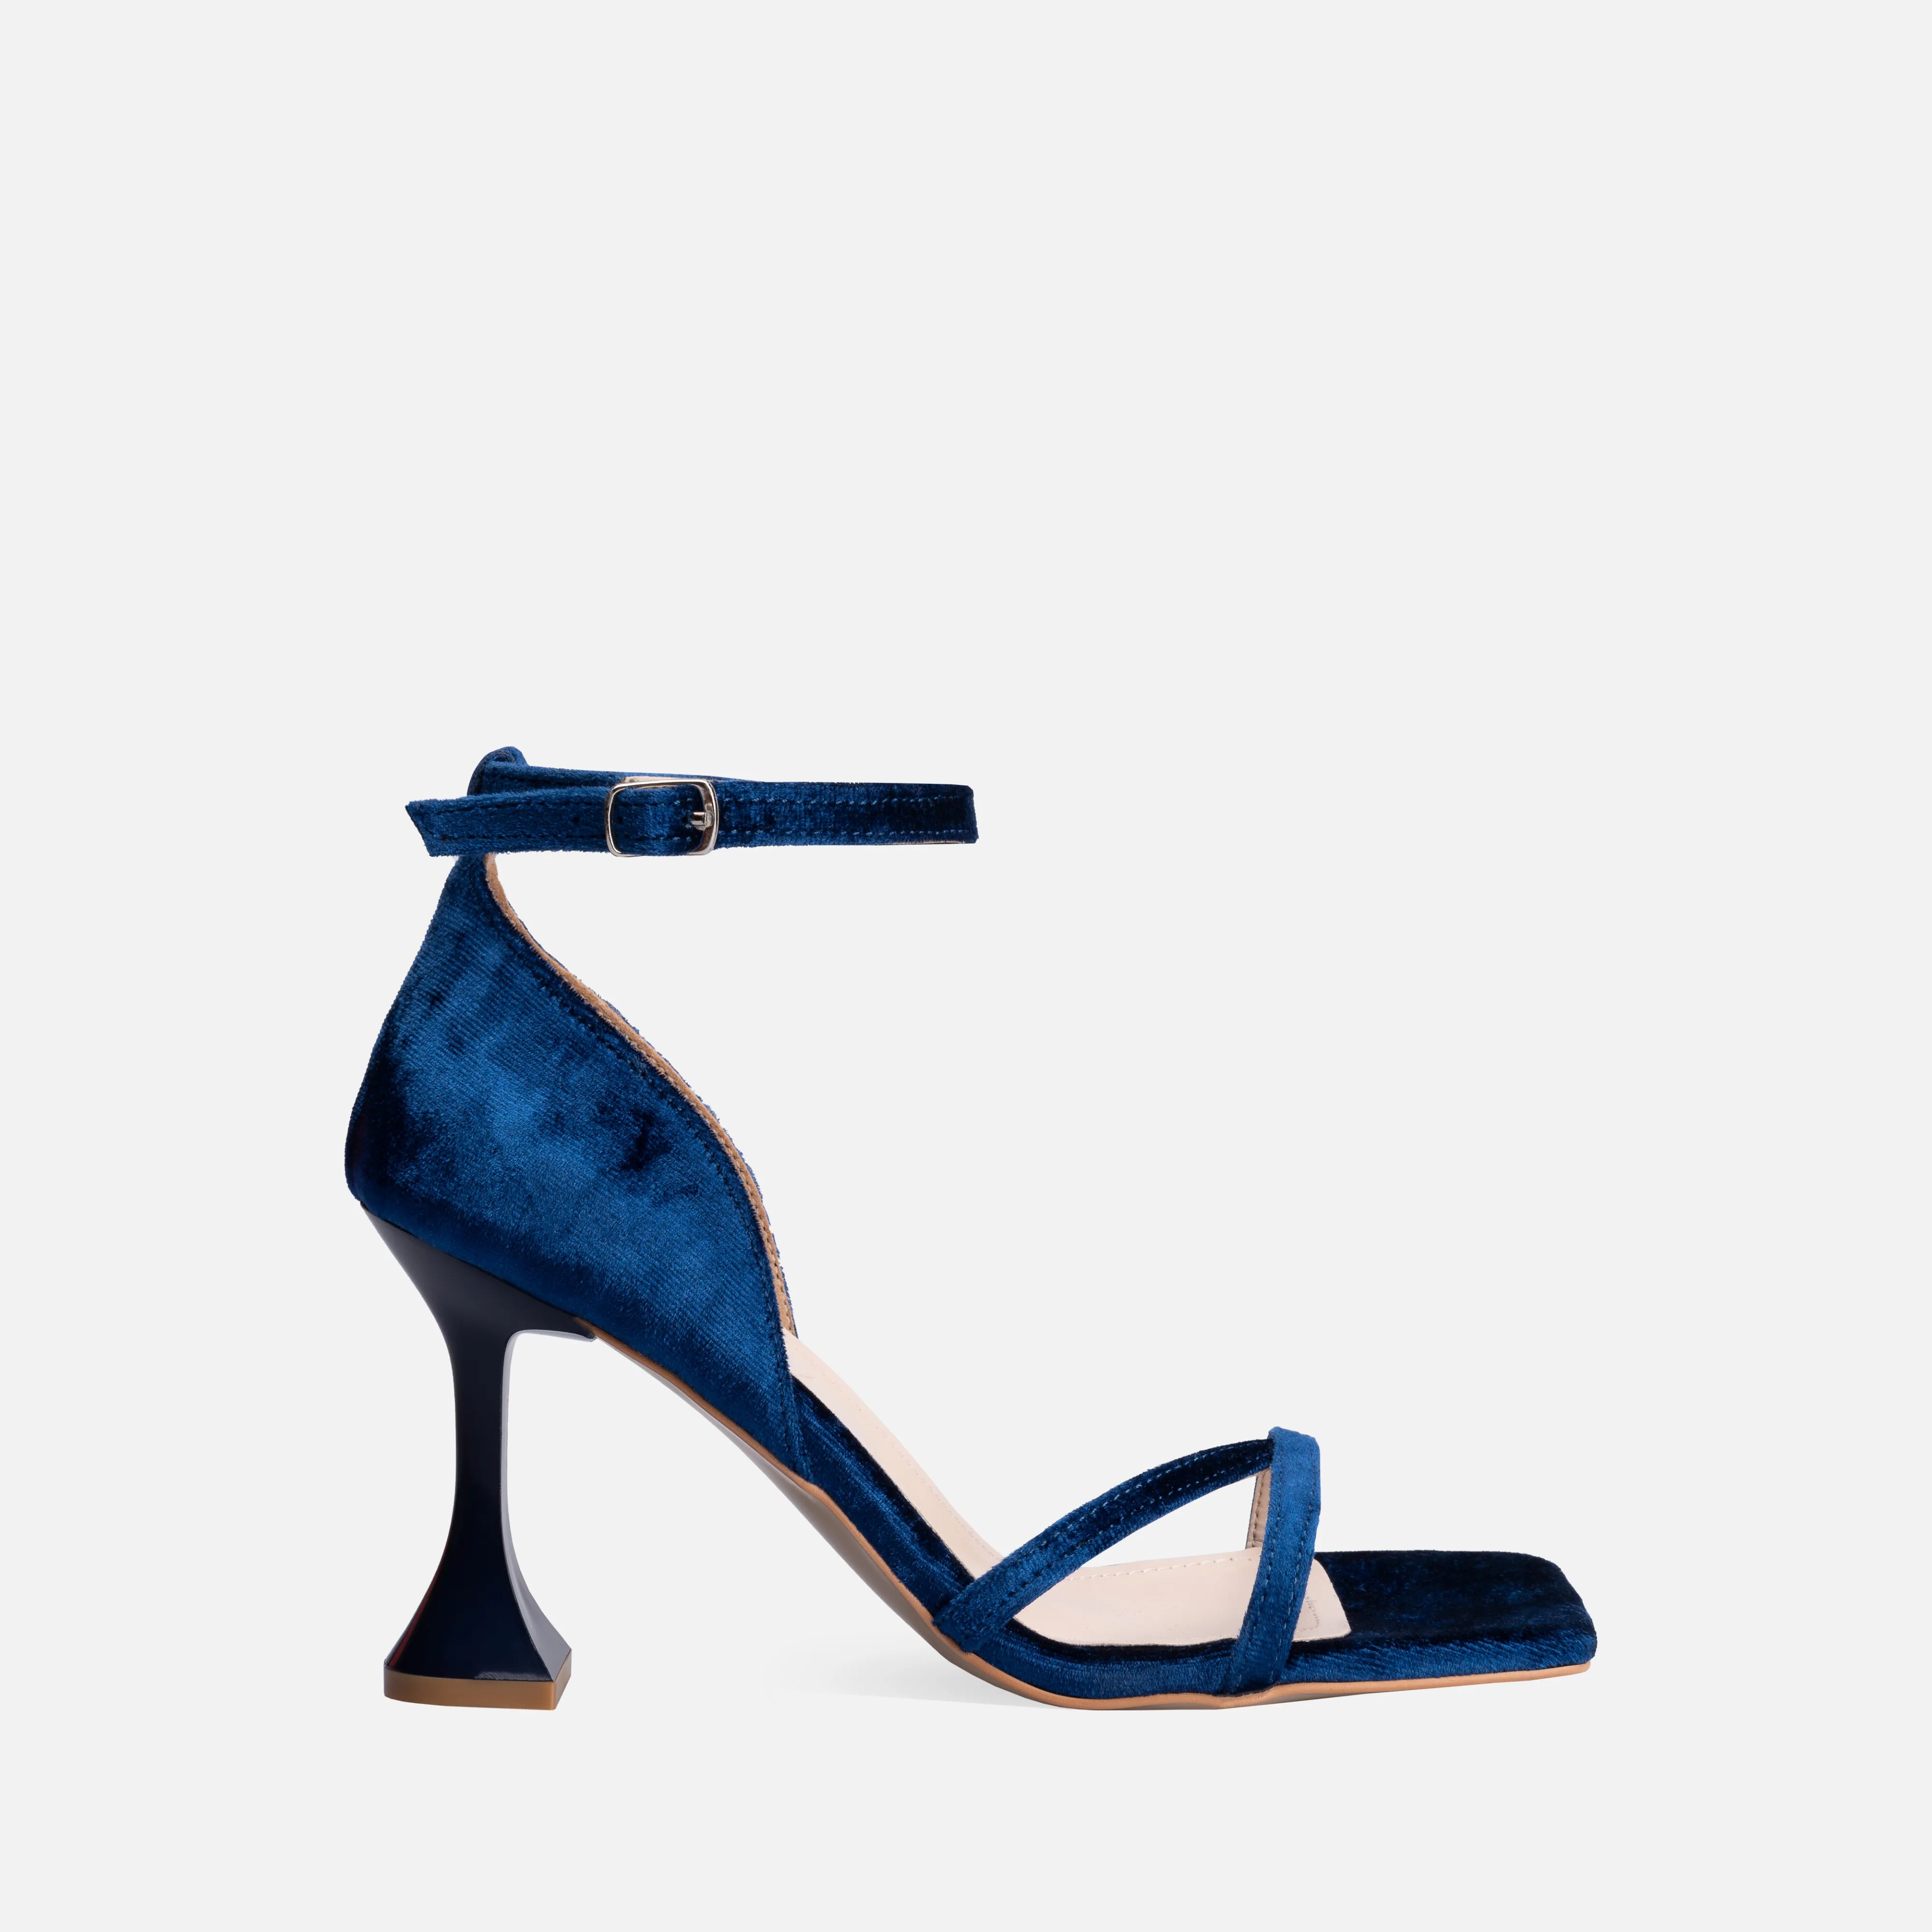 Kadife İnce Yüksek Topuklu Ayakkabı - Mavi